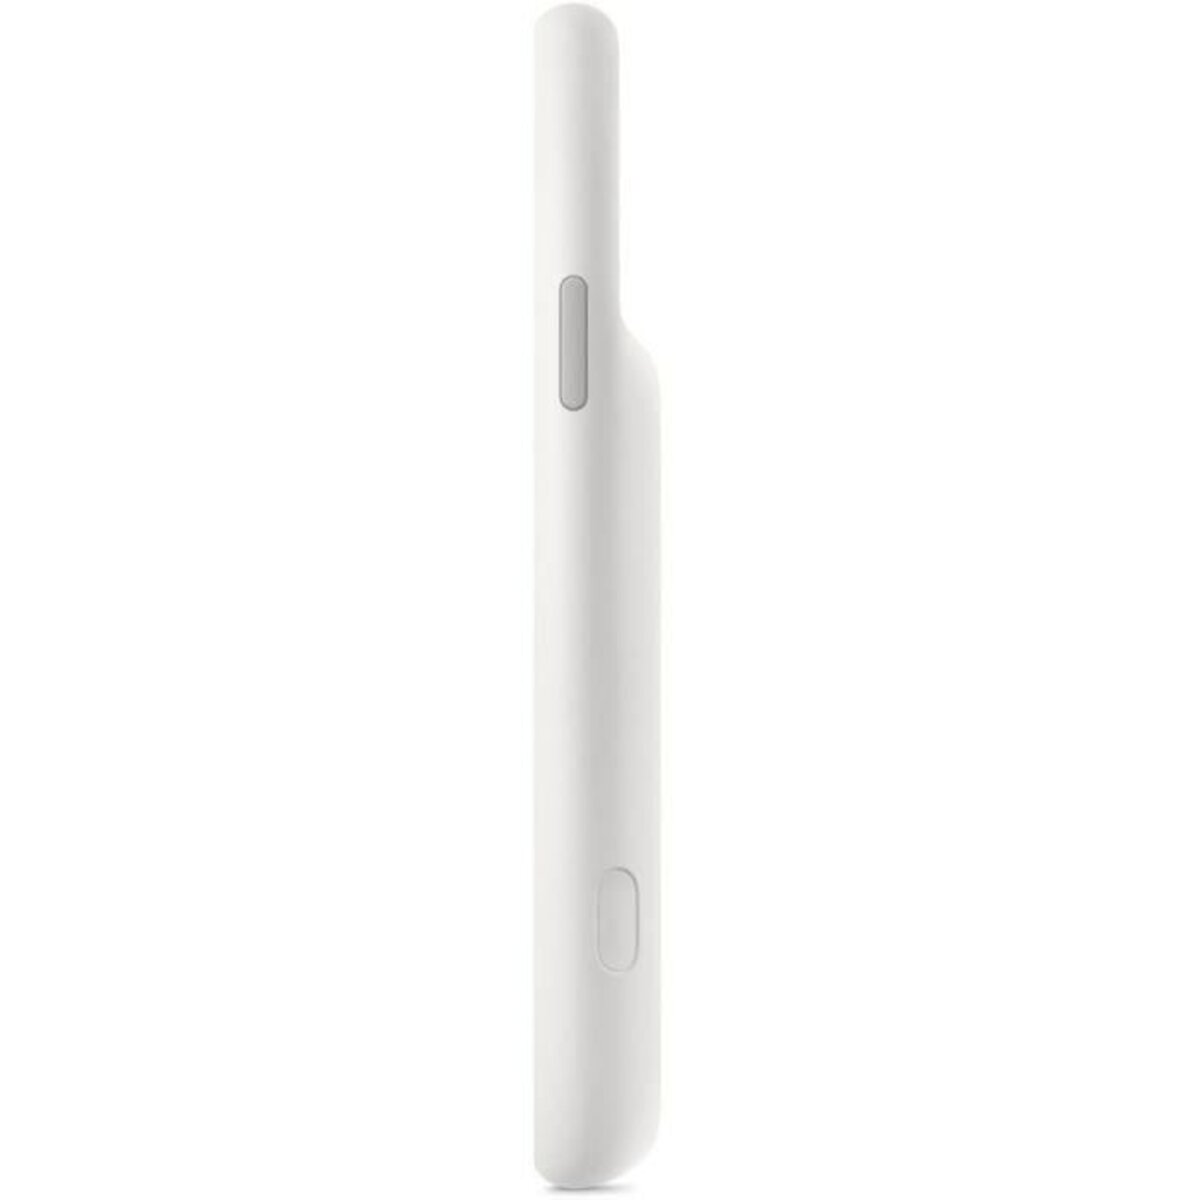 Mondpalast ® Blanc Coque batterie externe Etui housse rechargeable 3000mah  avec support pour Apple iPhone 6 4.7